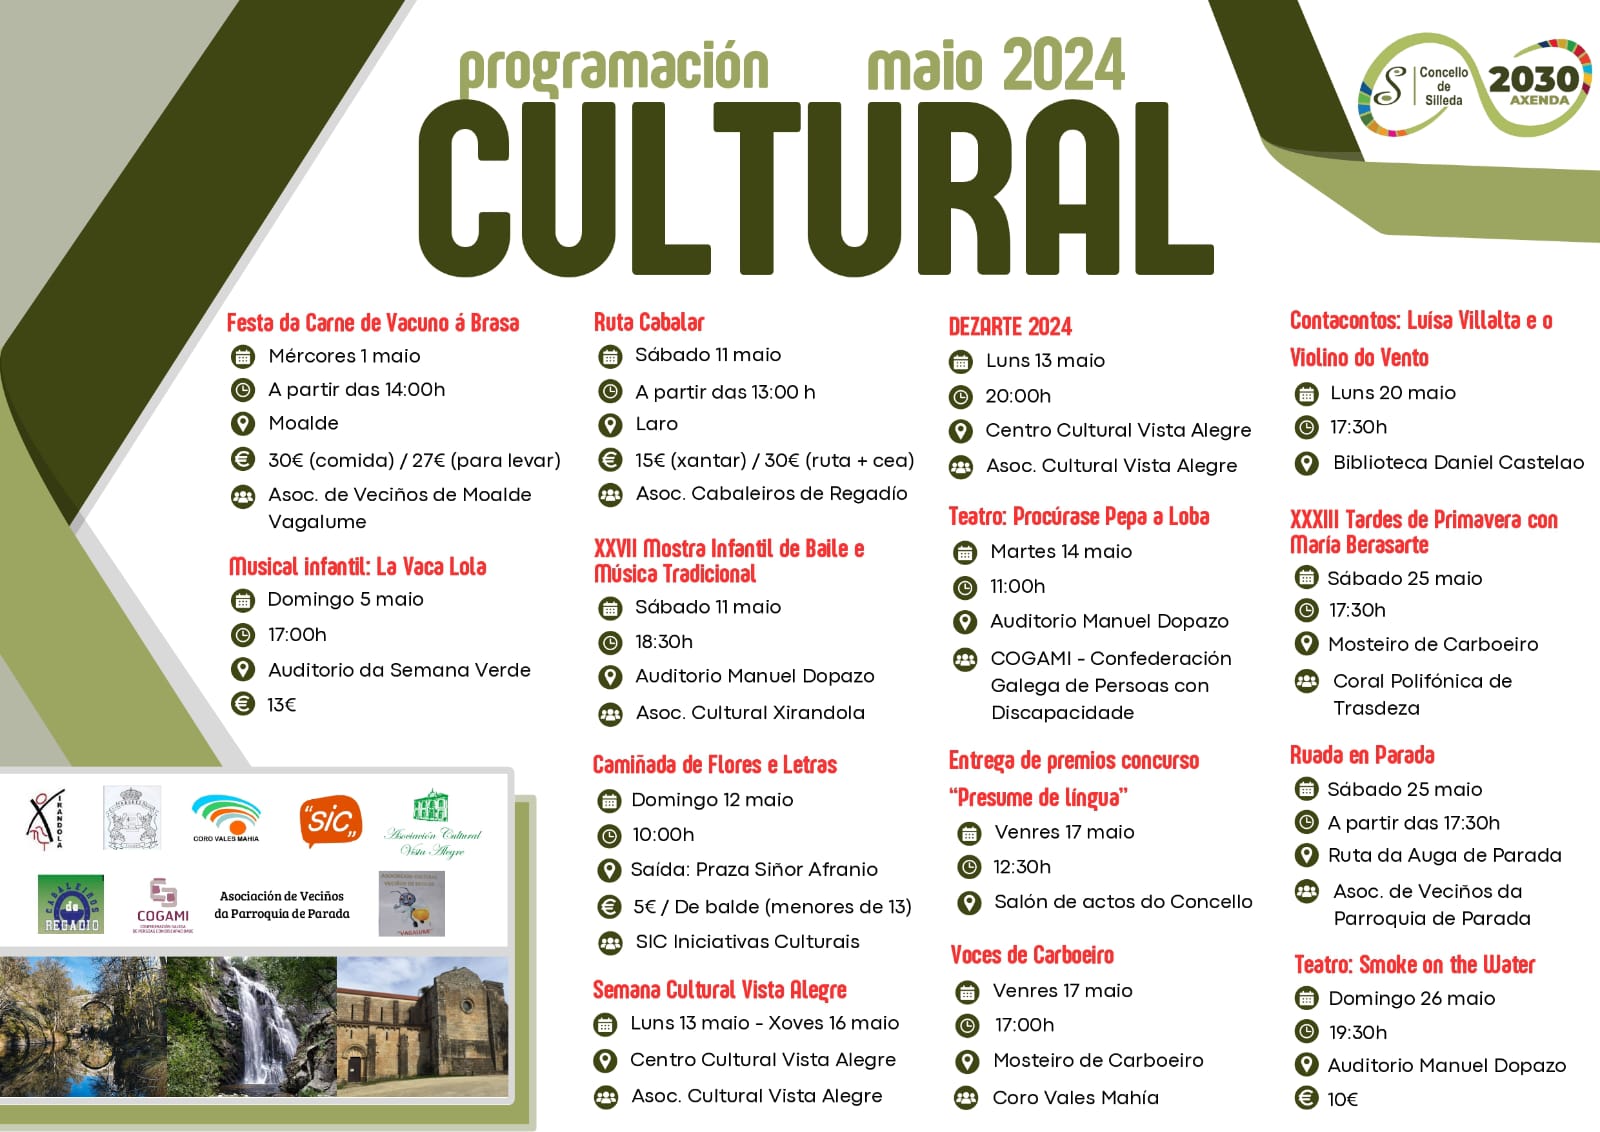 Teatro, concertos, baile e música tradicional centran a programación cultural de maio en Silleda